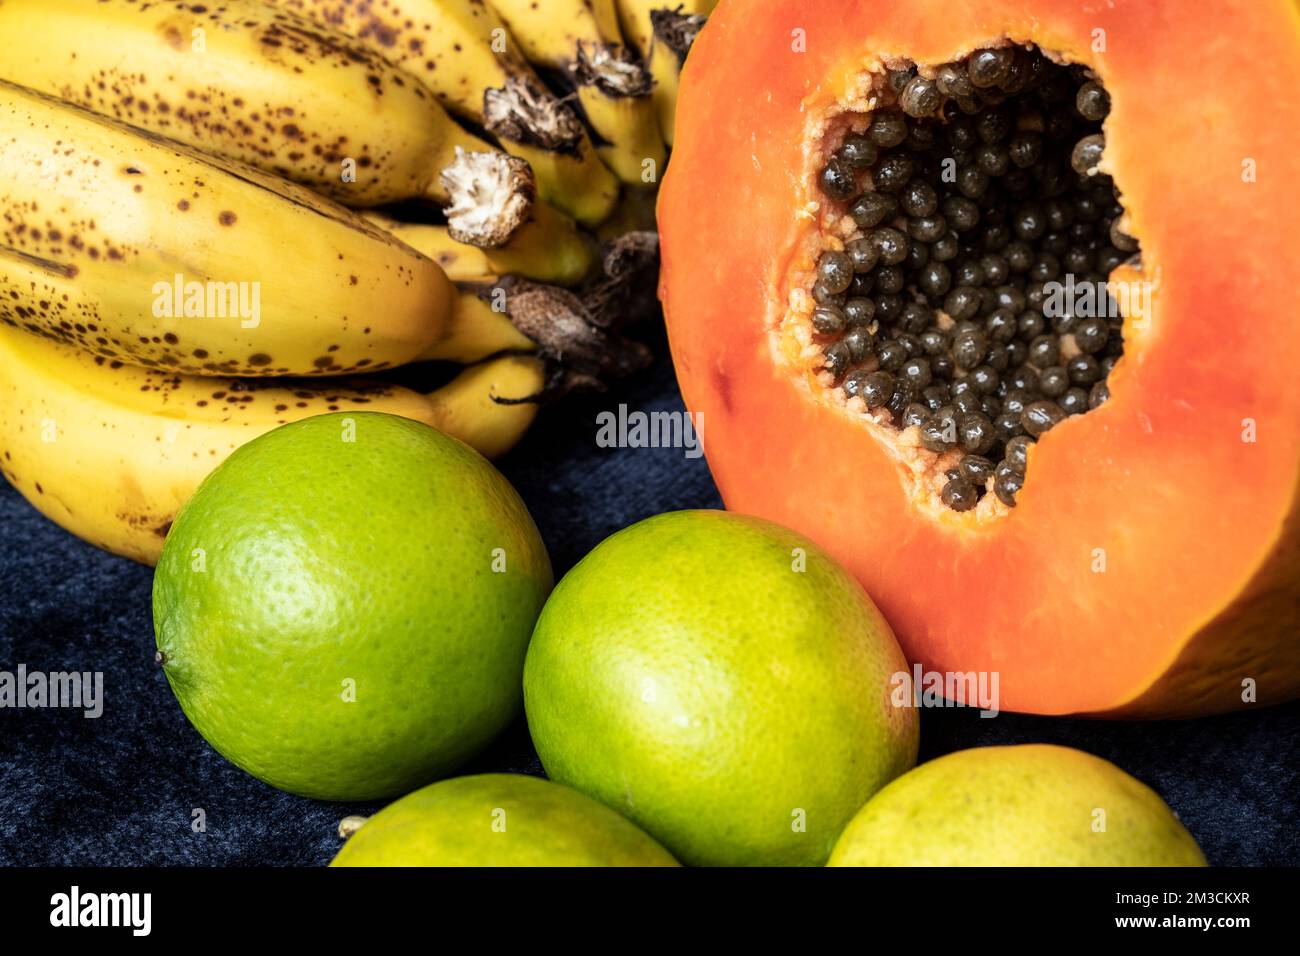 Aus nächster Nähe sehen Sie eine frisch geschnittene Orangenpapaya mit Samen im Inneren, eine Sommersprossen-Bananengruppe und drei grüne Zitronen auf blauem marineblauem Hintergrund. Obst und E Stockfoto